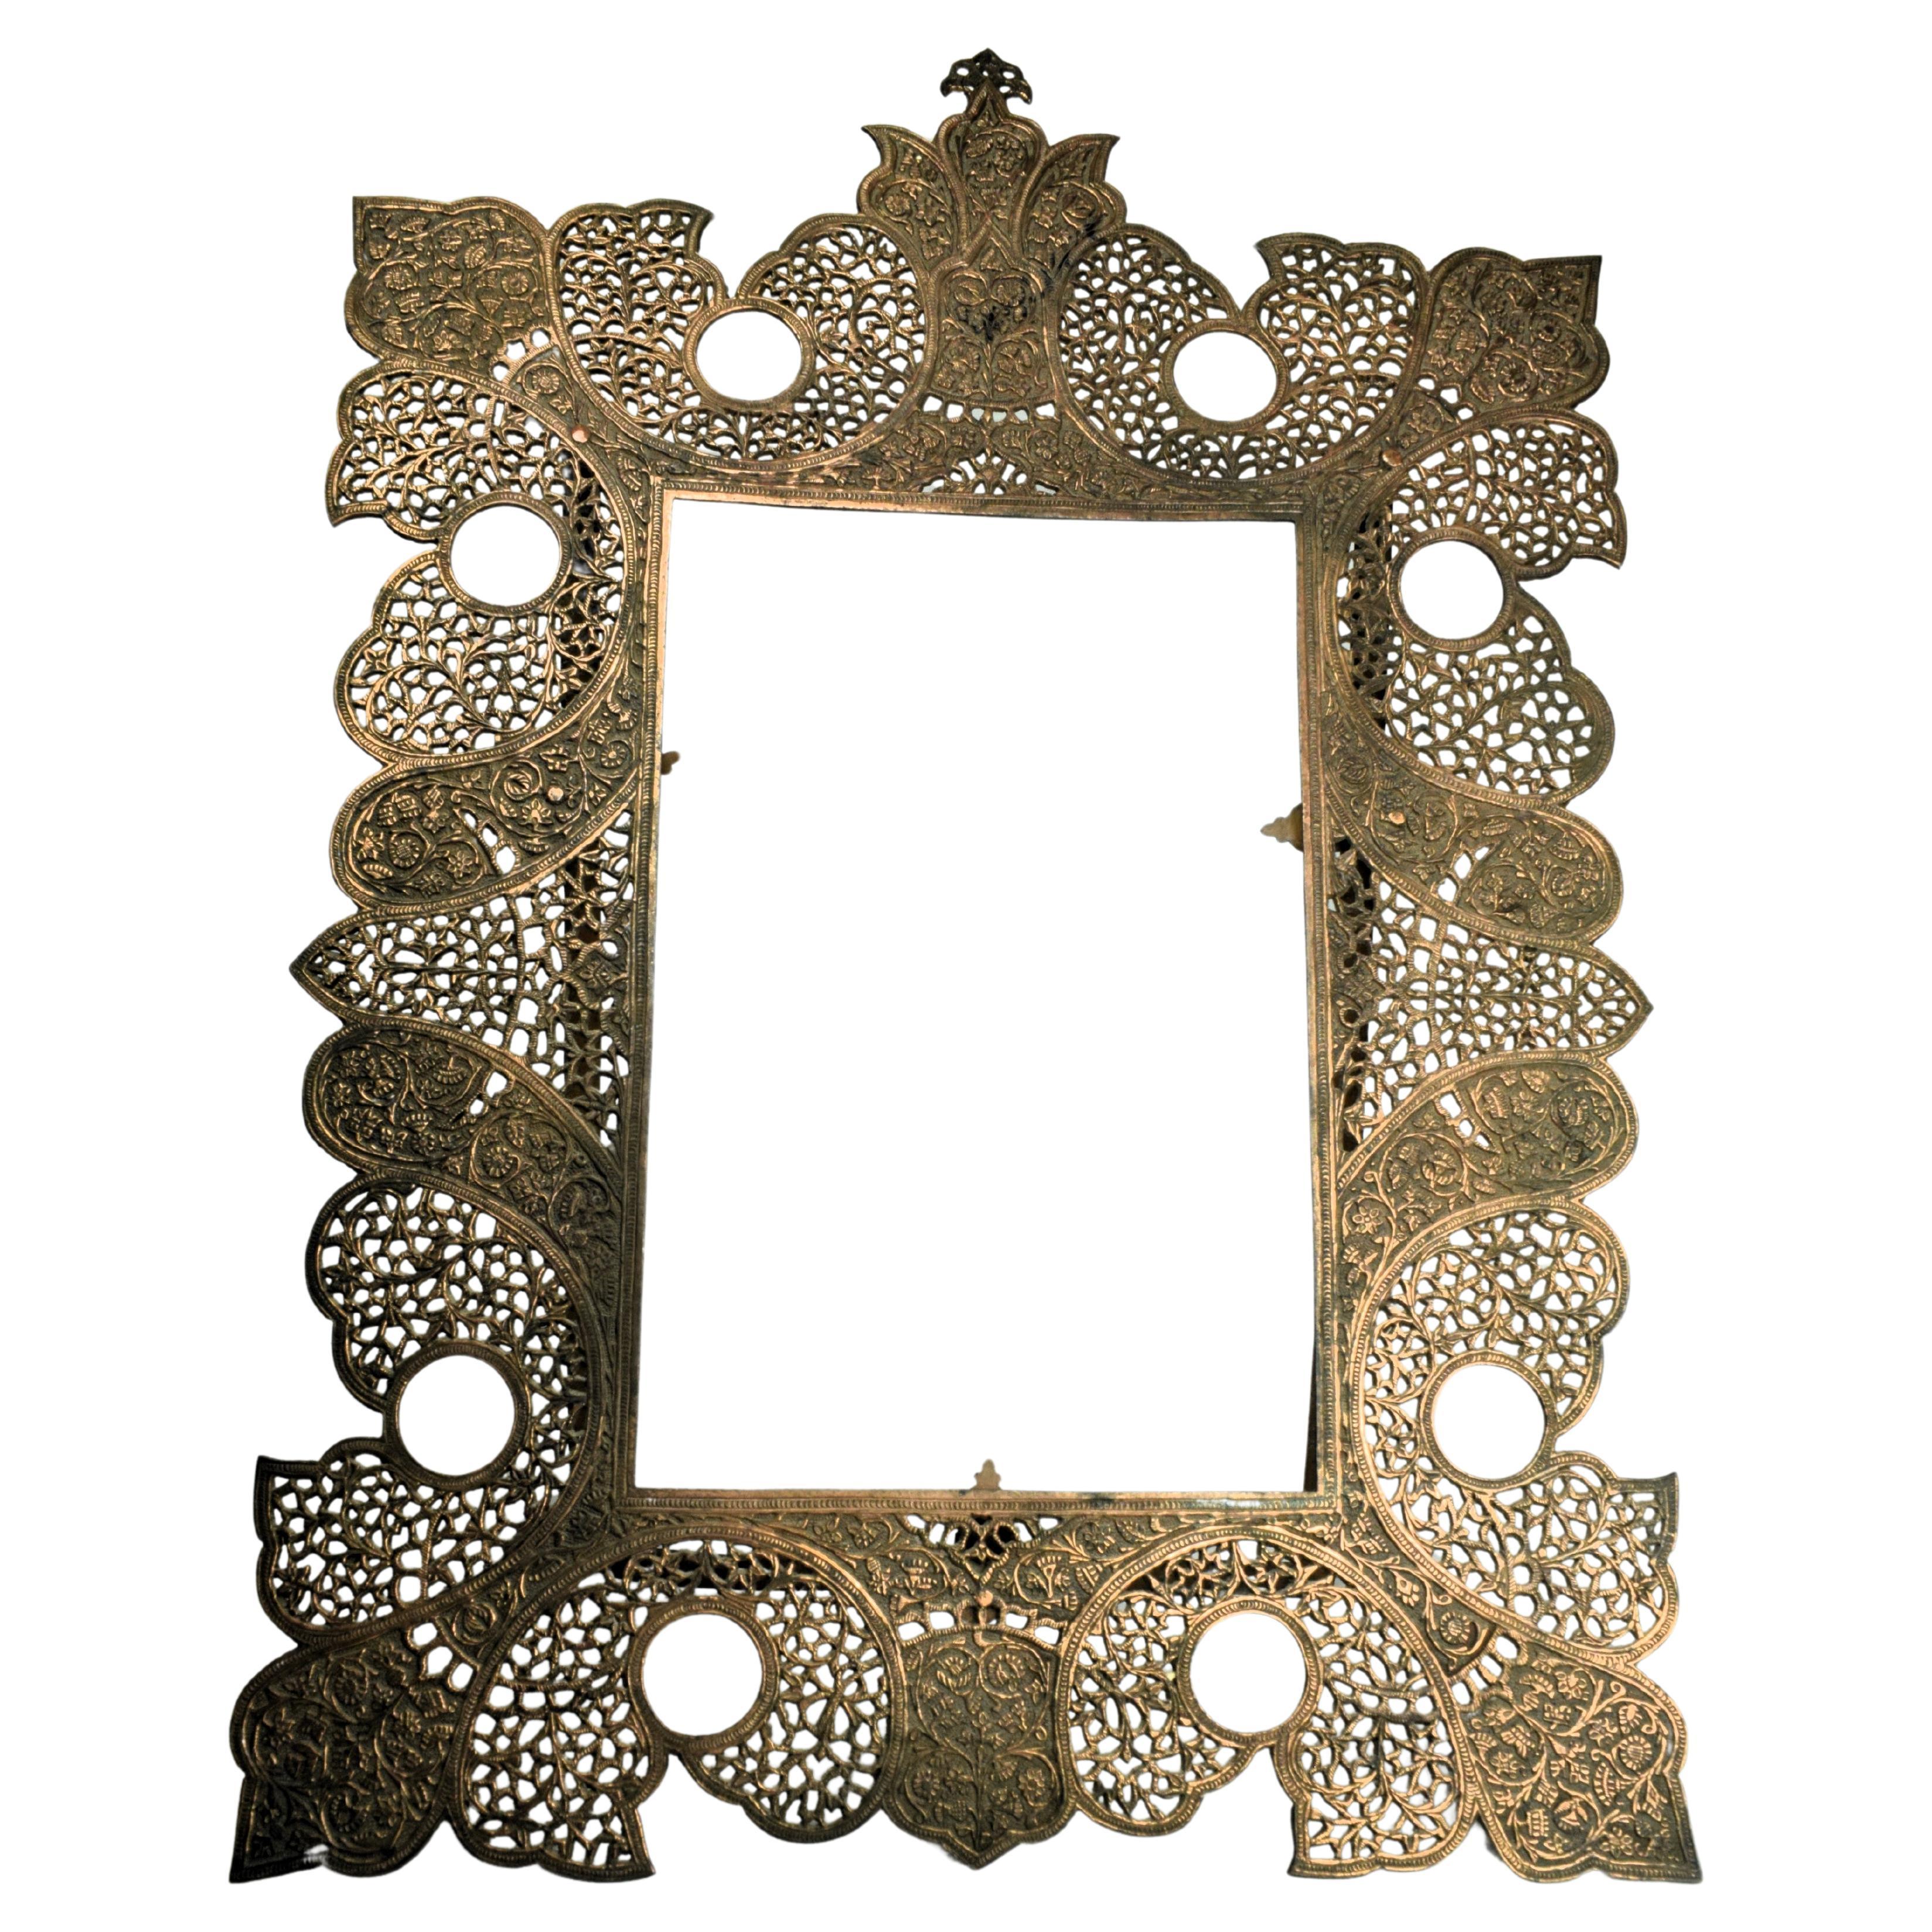 Kaschmirischer Kupferschnitt-Rahmen, Ende 19. Jahrhundert